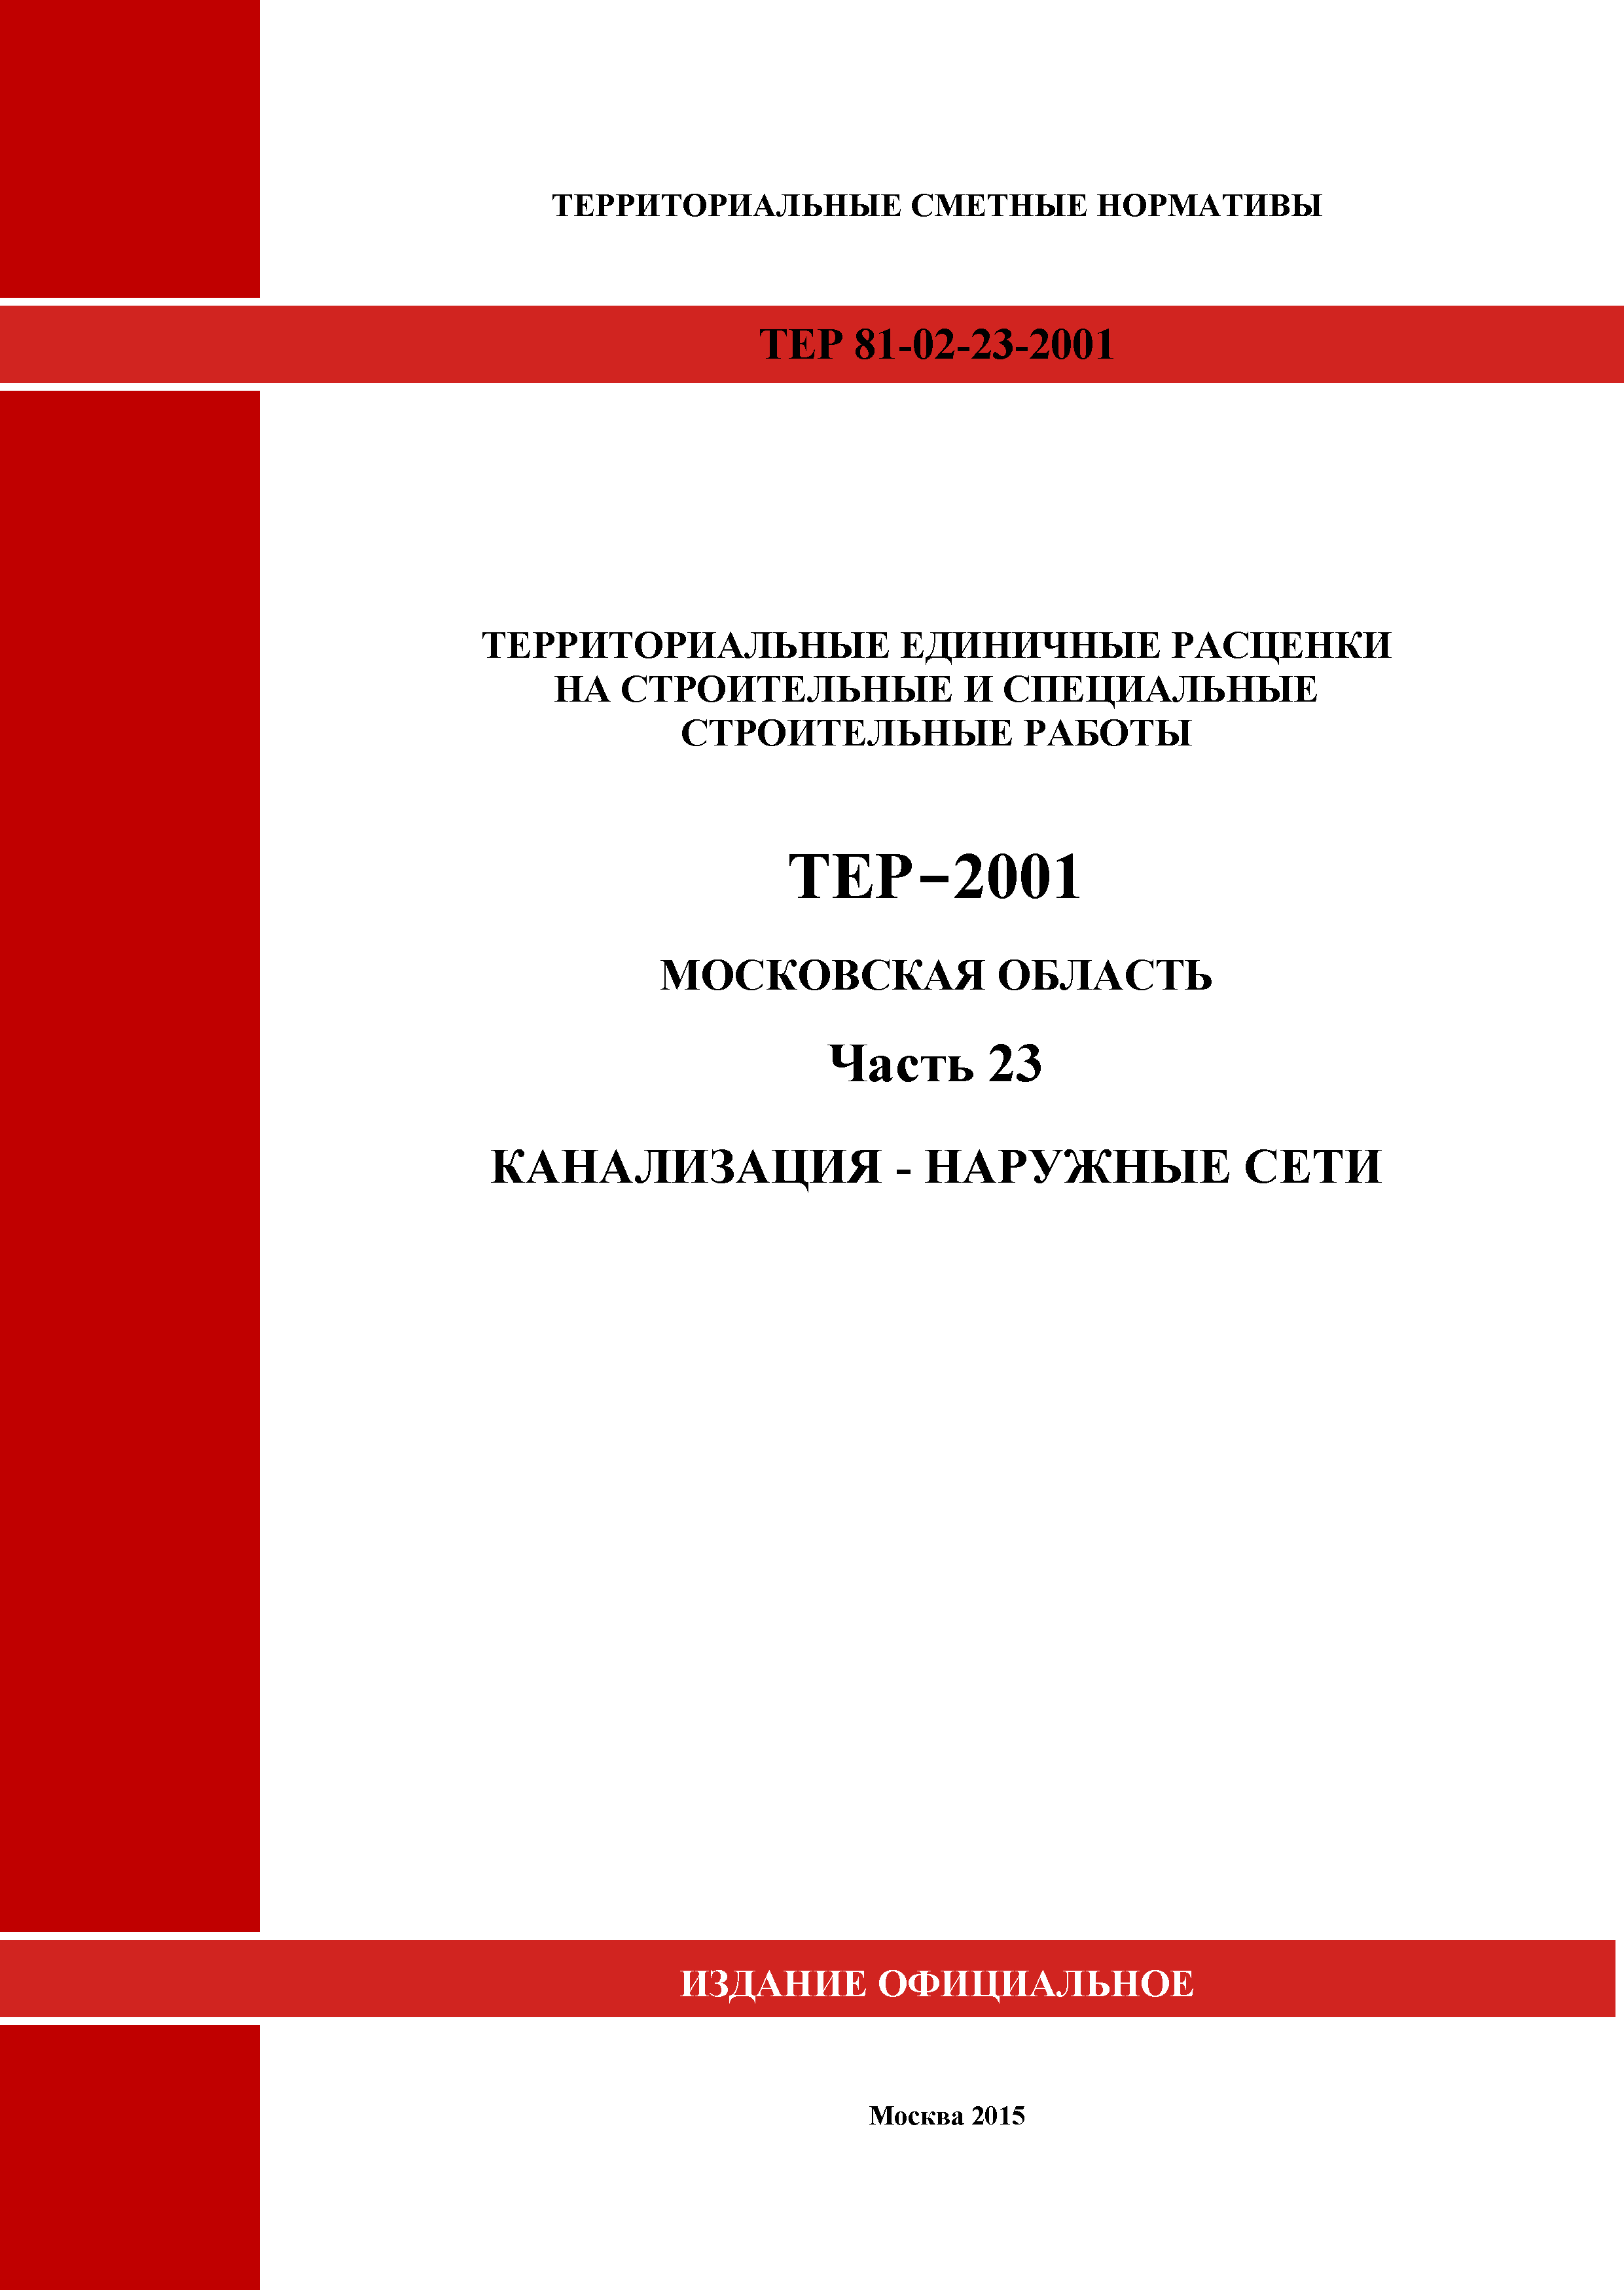 ТЕР 23-2001 Московской области